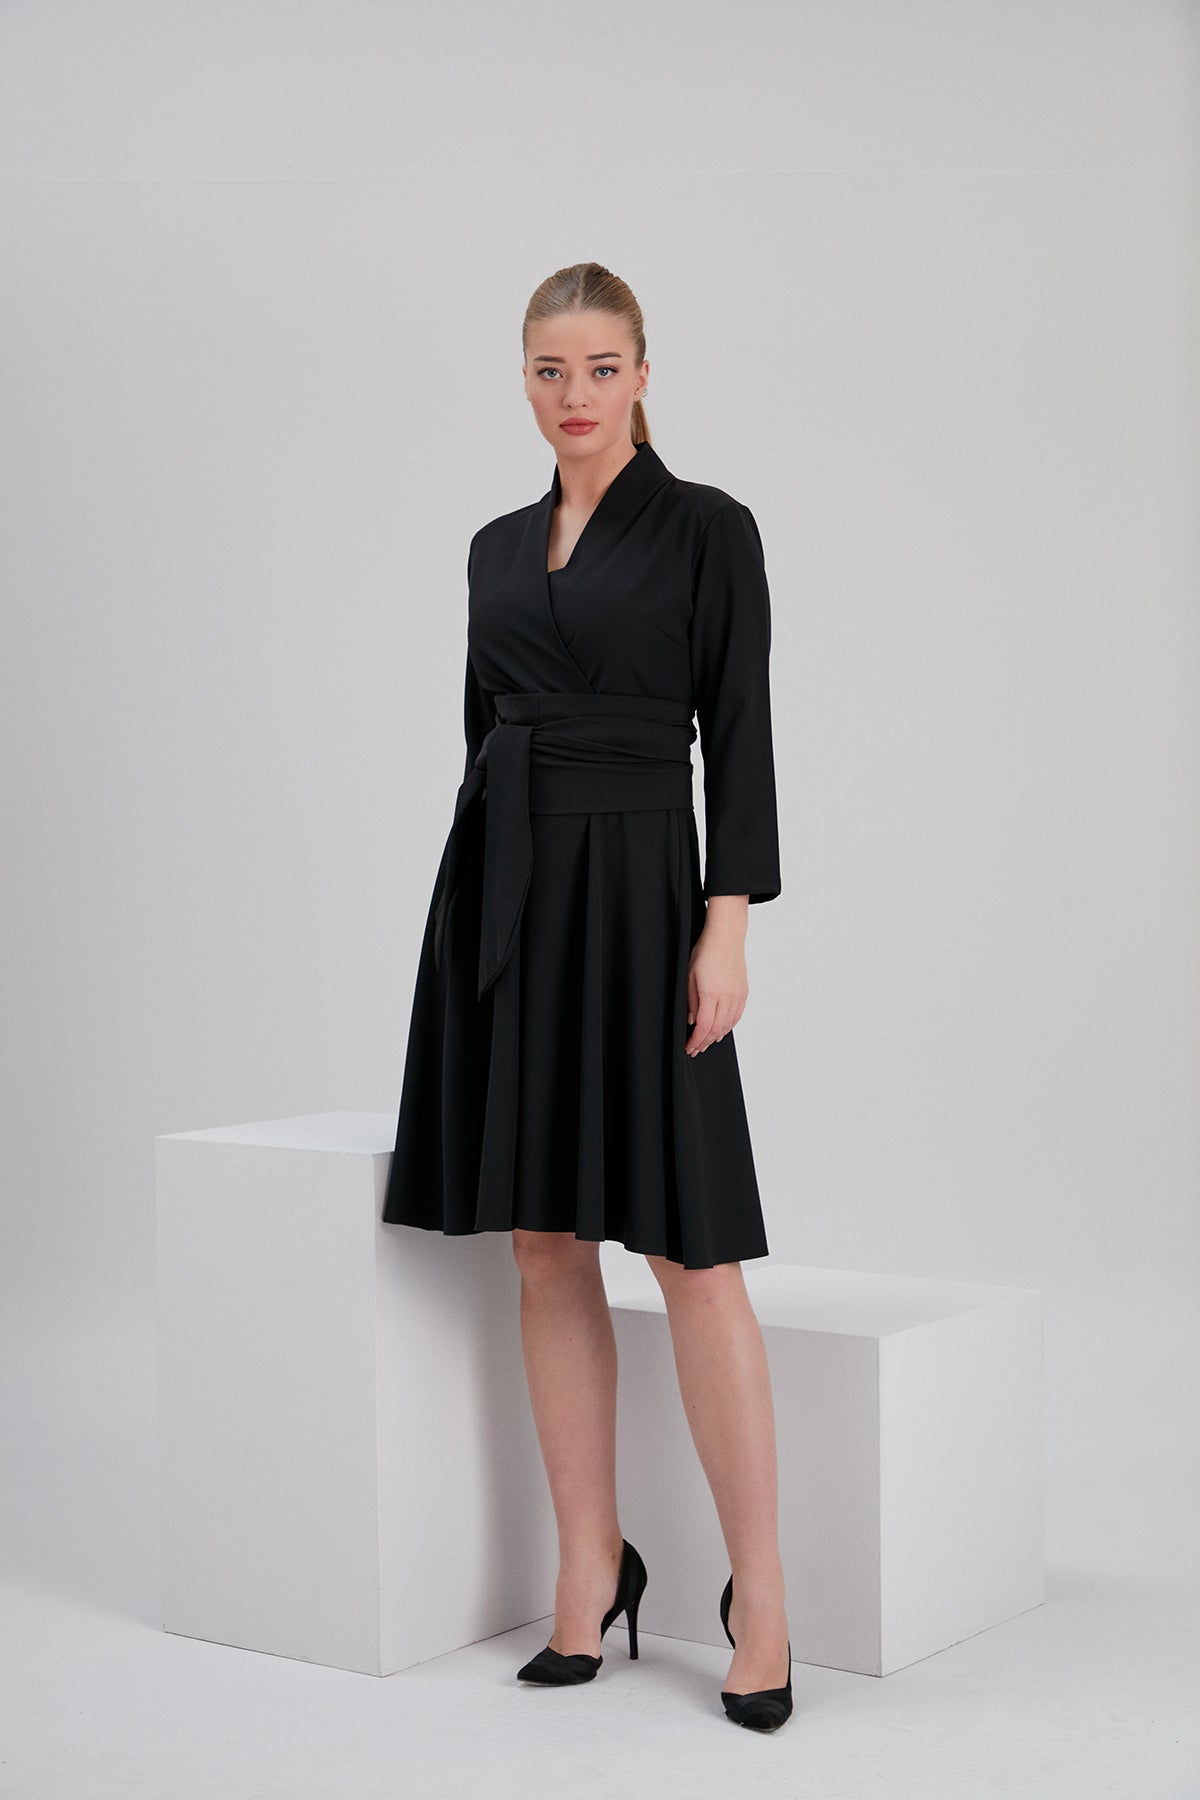 noacode black recycled polyester elegant midi dress with black stilettos for plus tall size fashion europe